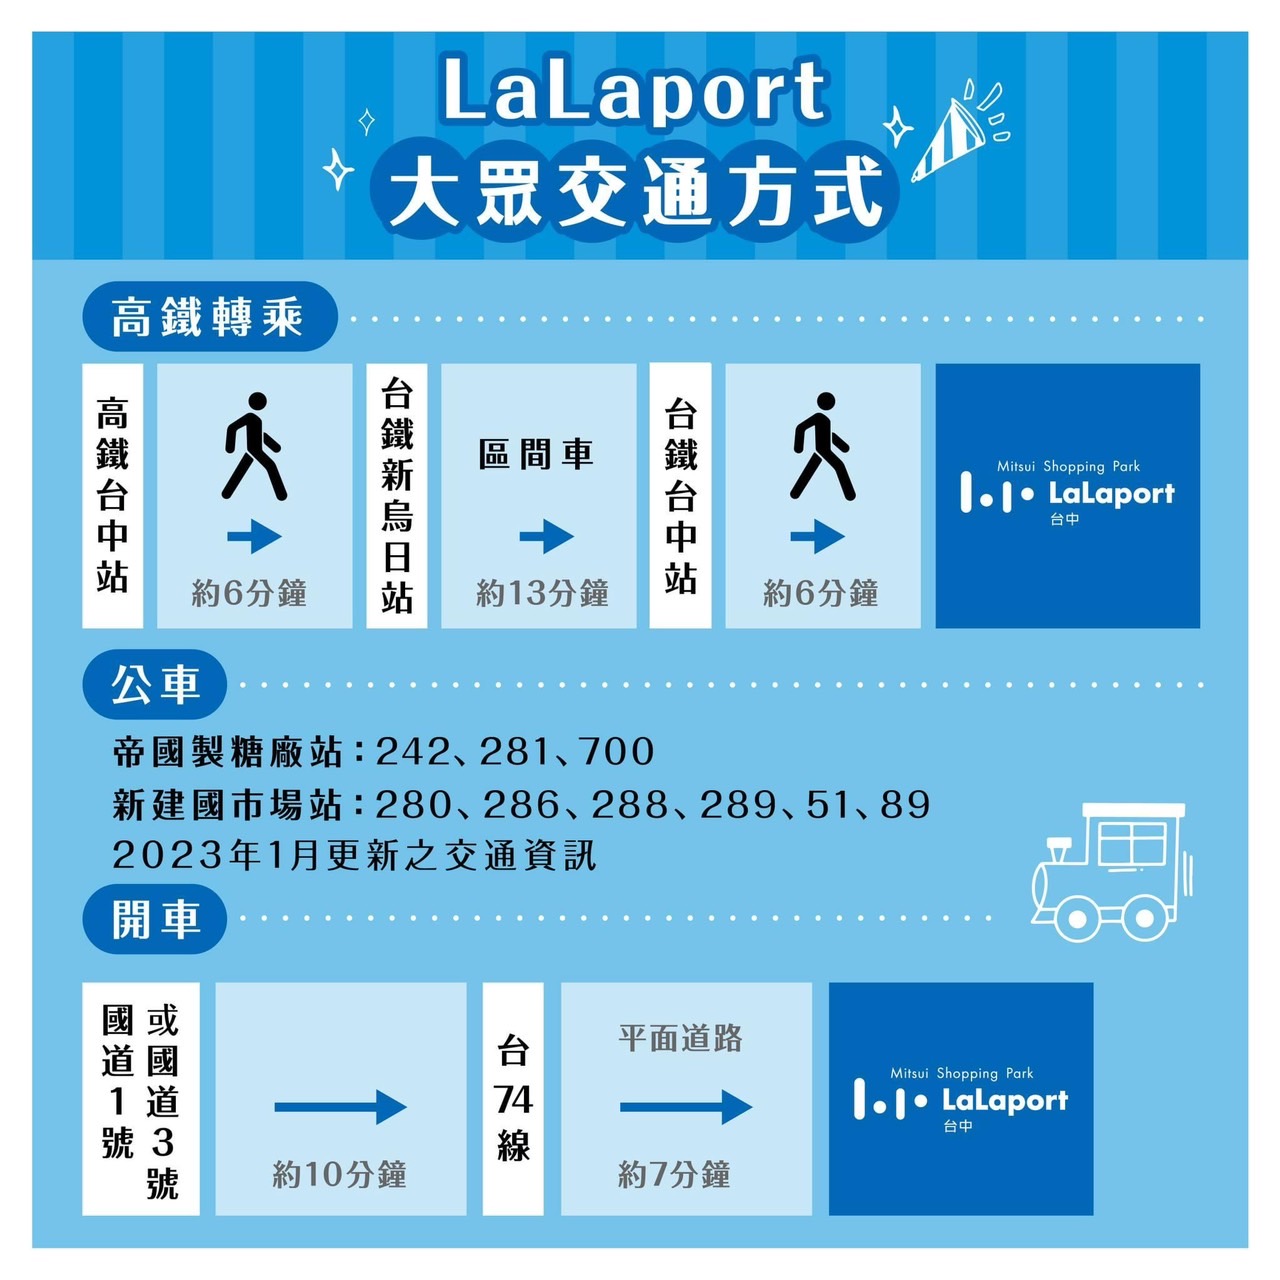 台中市東區最大購物中心LaLaport試營運啦！今天栗子就帶大家看看整體的購物中心內部長怎樣吧－台中市購物中心LaLaport開箱